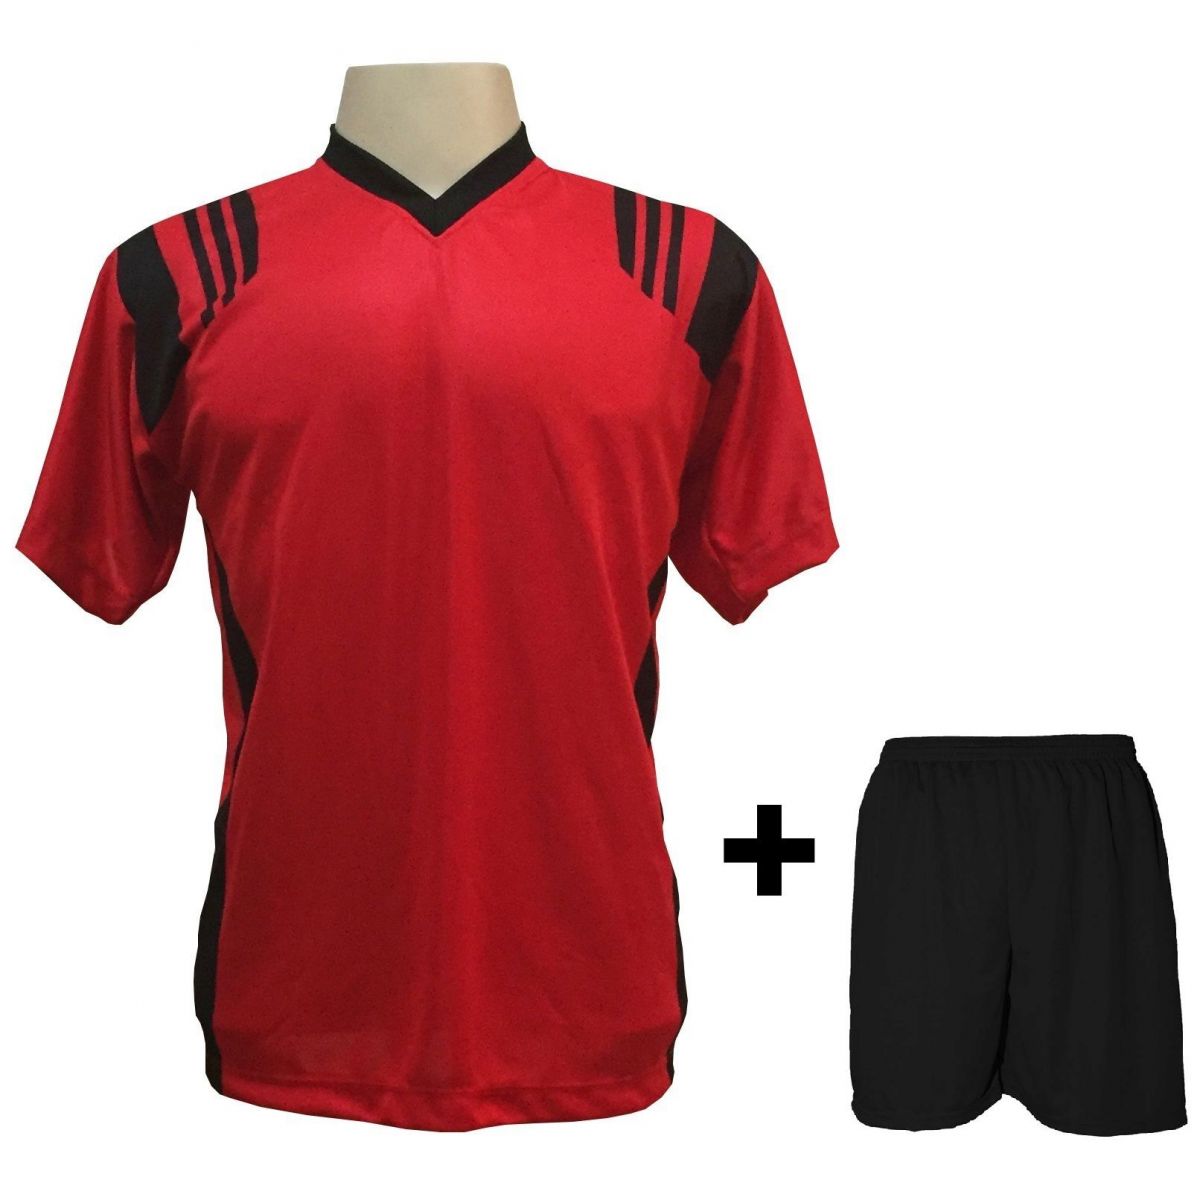 Uniforme Esportivo com 12 camisas modelo Roma Vermelho/Preto + 12 calções modelo Madrid + 1 Goleiro + Brindes